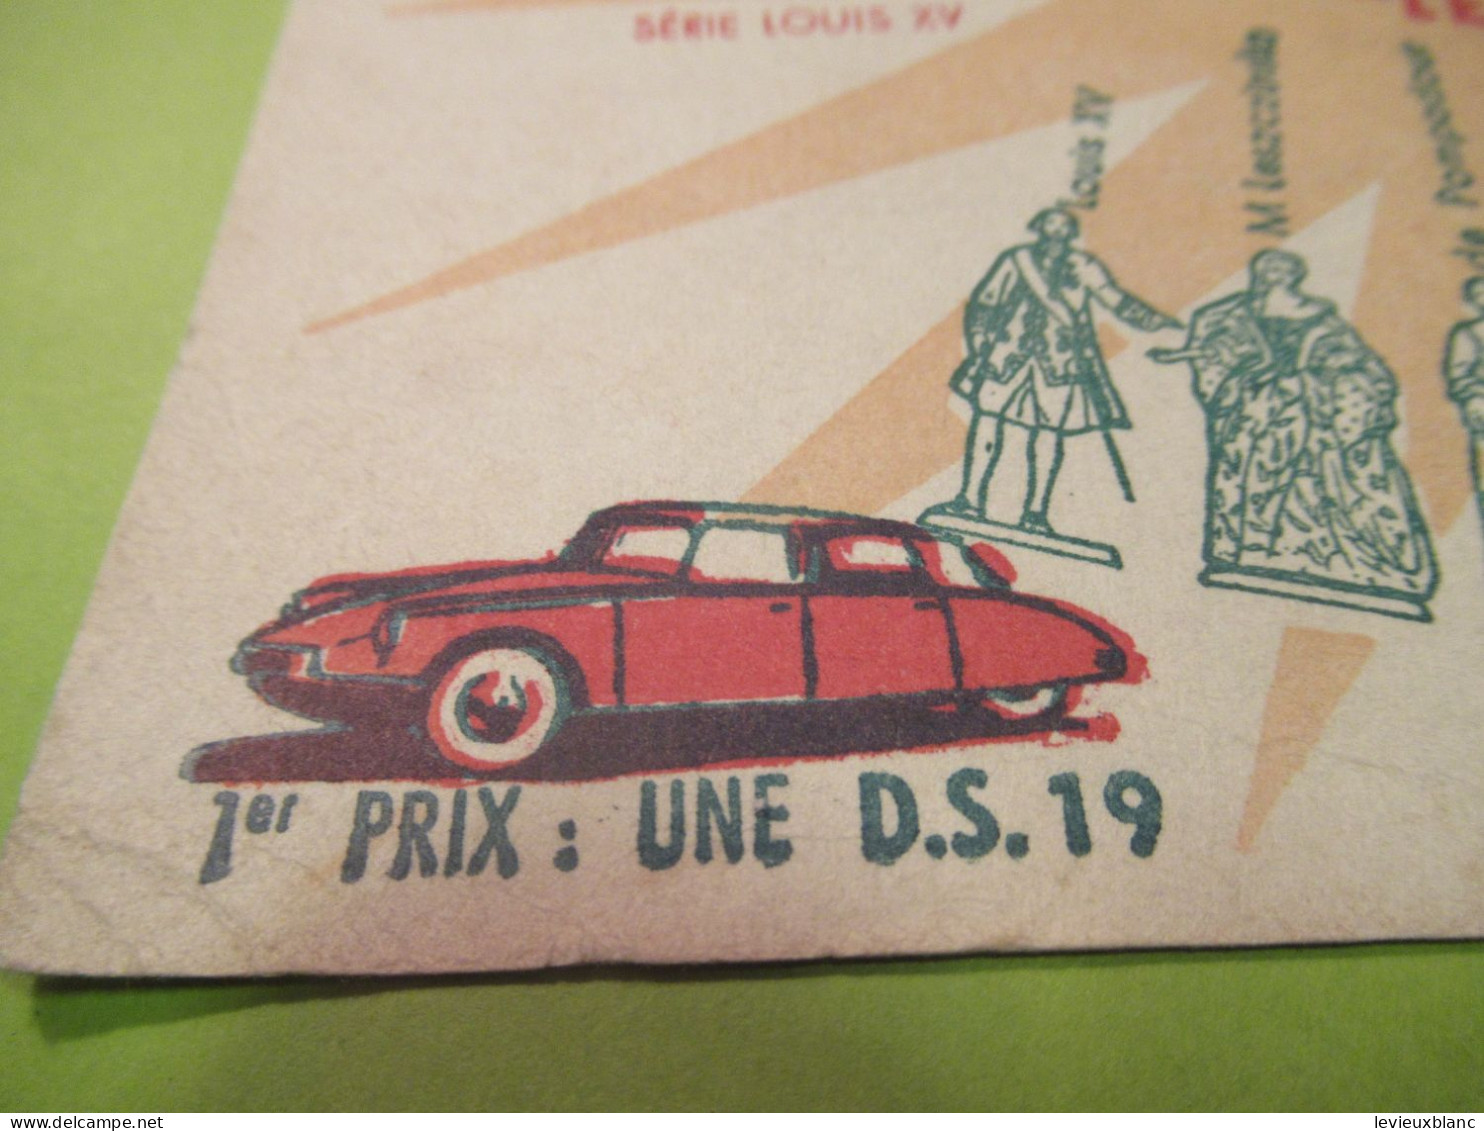 Buvard Ancien/Café/ MOKAREX/Concours De Coloriage/Epinay/1957     BUV625 - Café & Thé